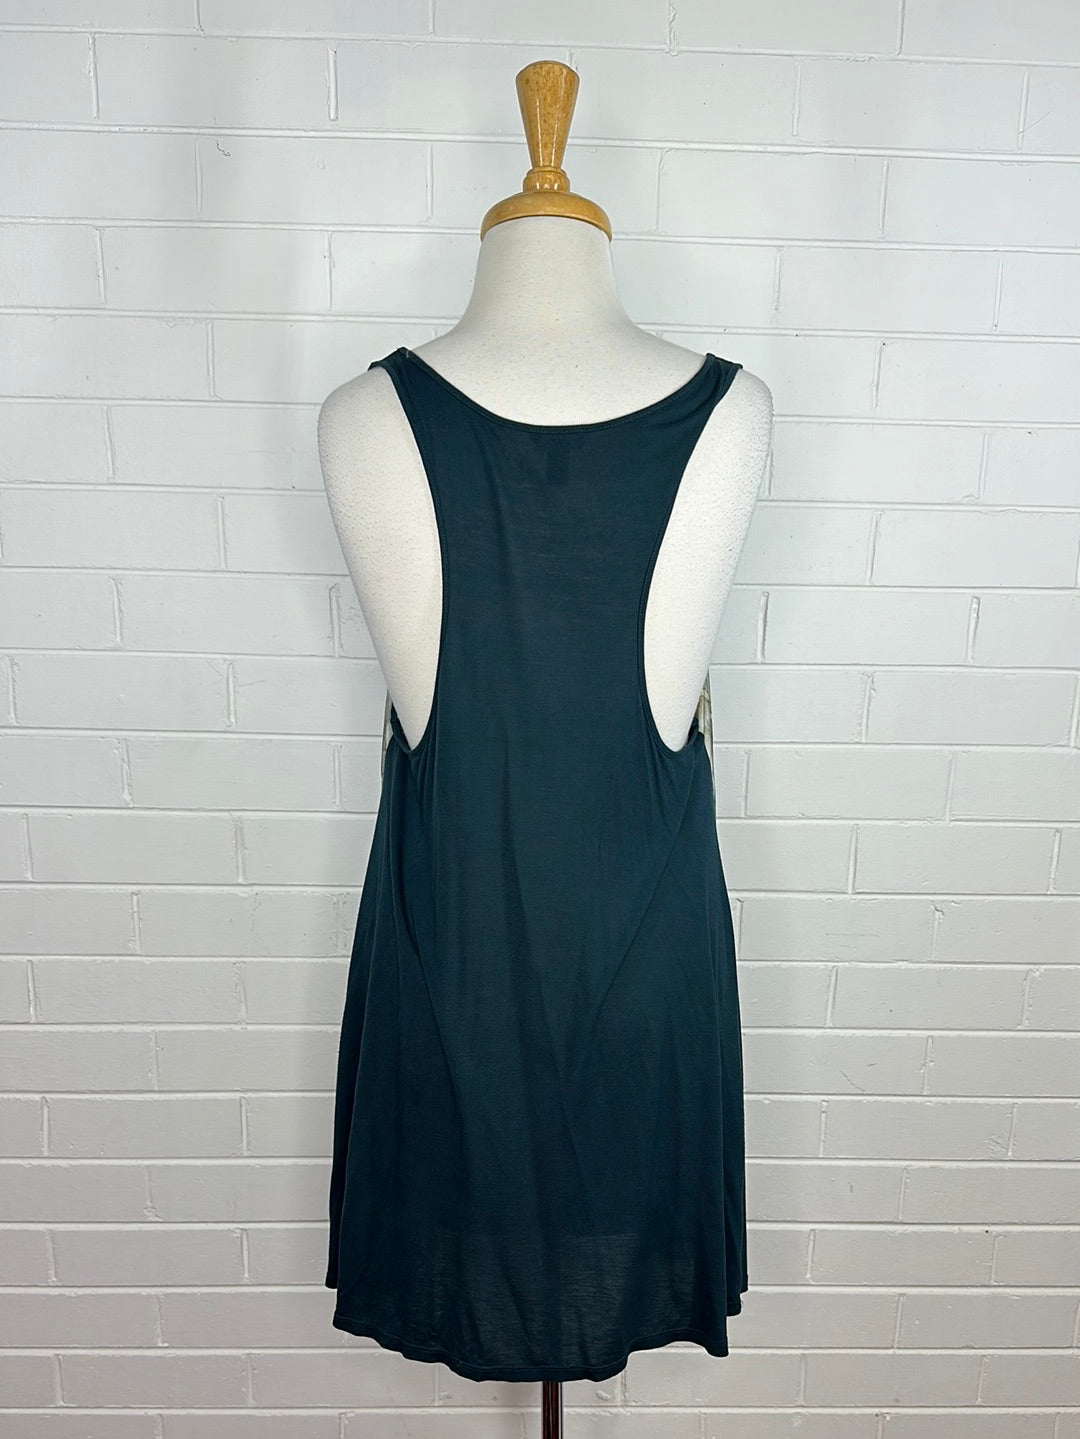 Ted Baker | London | dress | size 12 | knee length